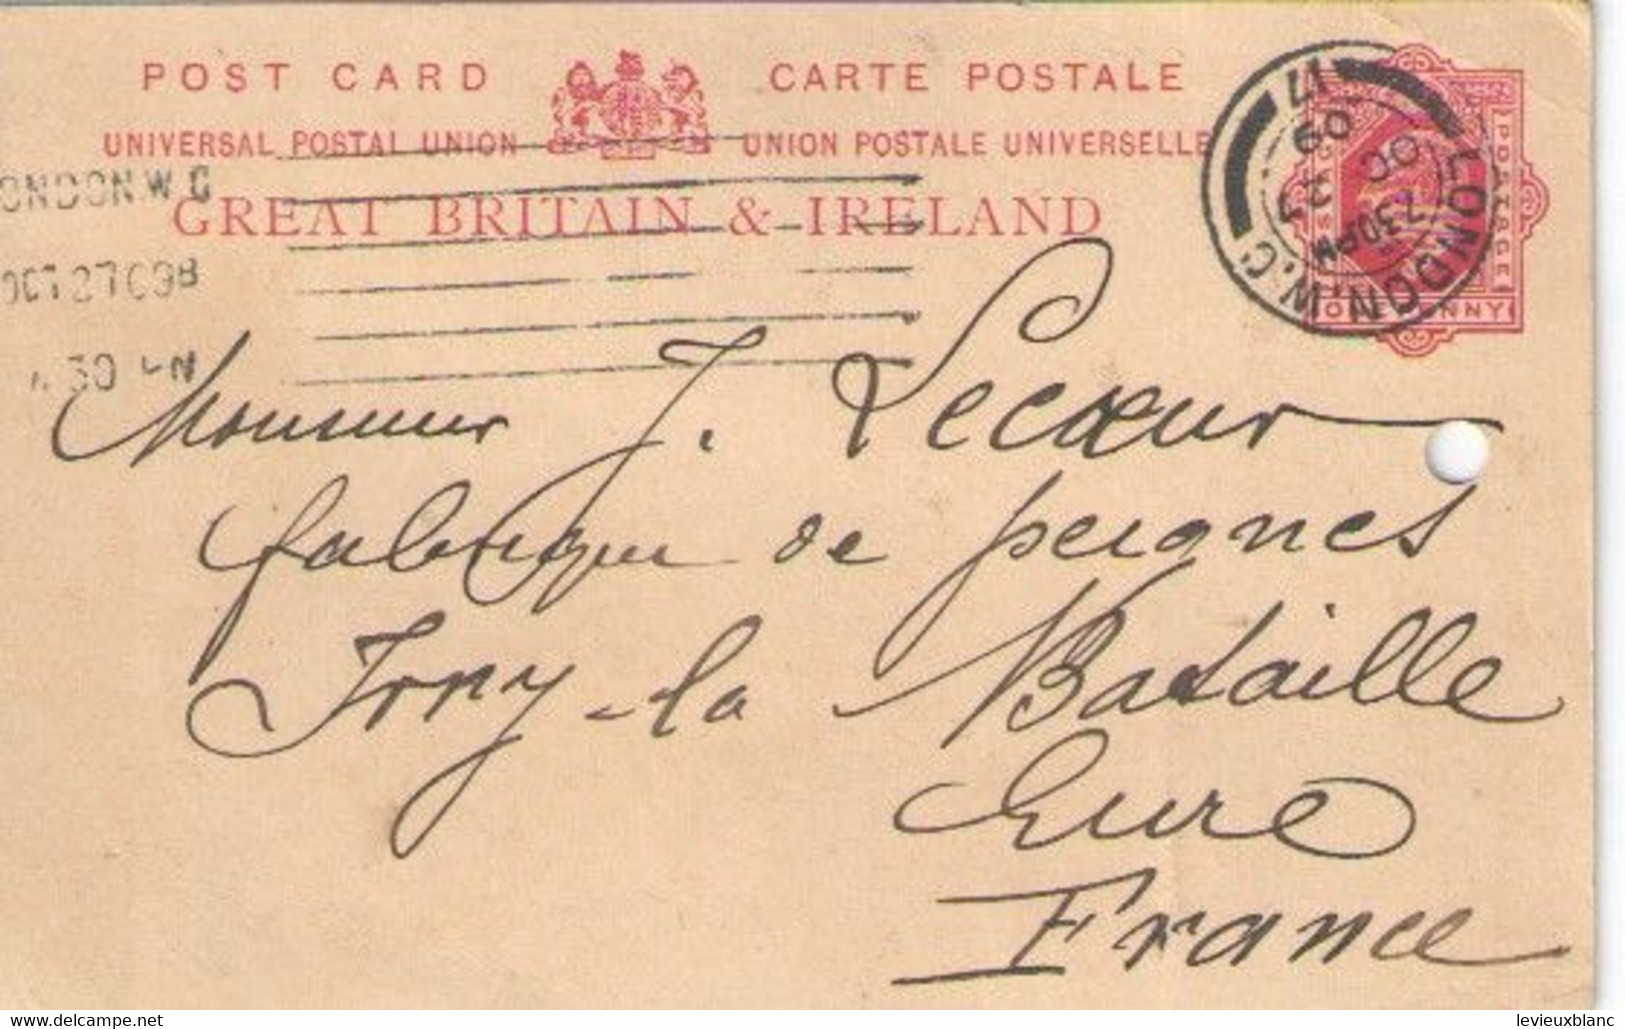 GREAT BRITAIN & IRELAND/Vente D'Ivoire/LONDON/Joseph LECOEUR/Fabricant Peignes Ivoire/Ivry La Bataille/Eure/1909 FACT551 - Ver. Königreich